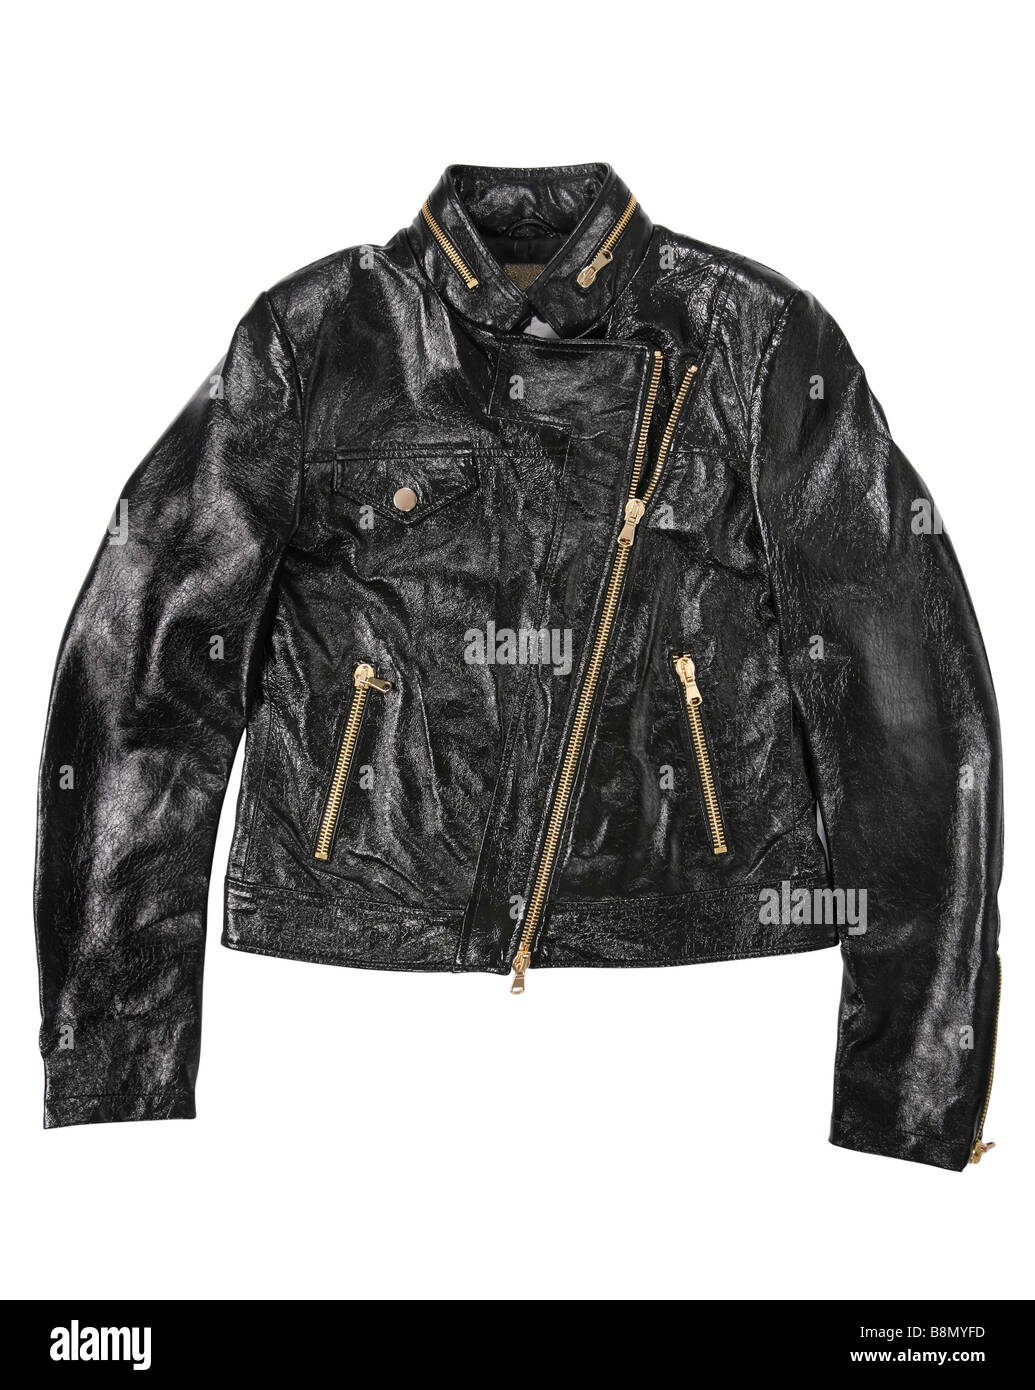 Man leather jacket clothing black color on white Stock Photo